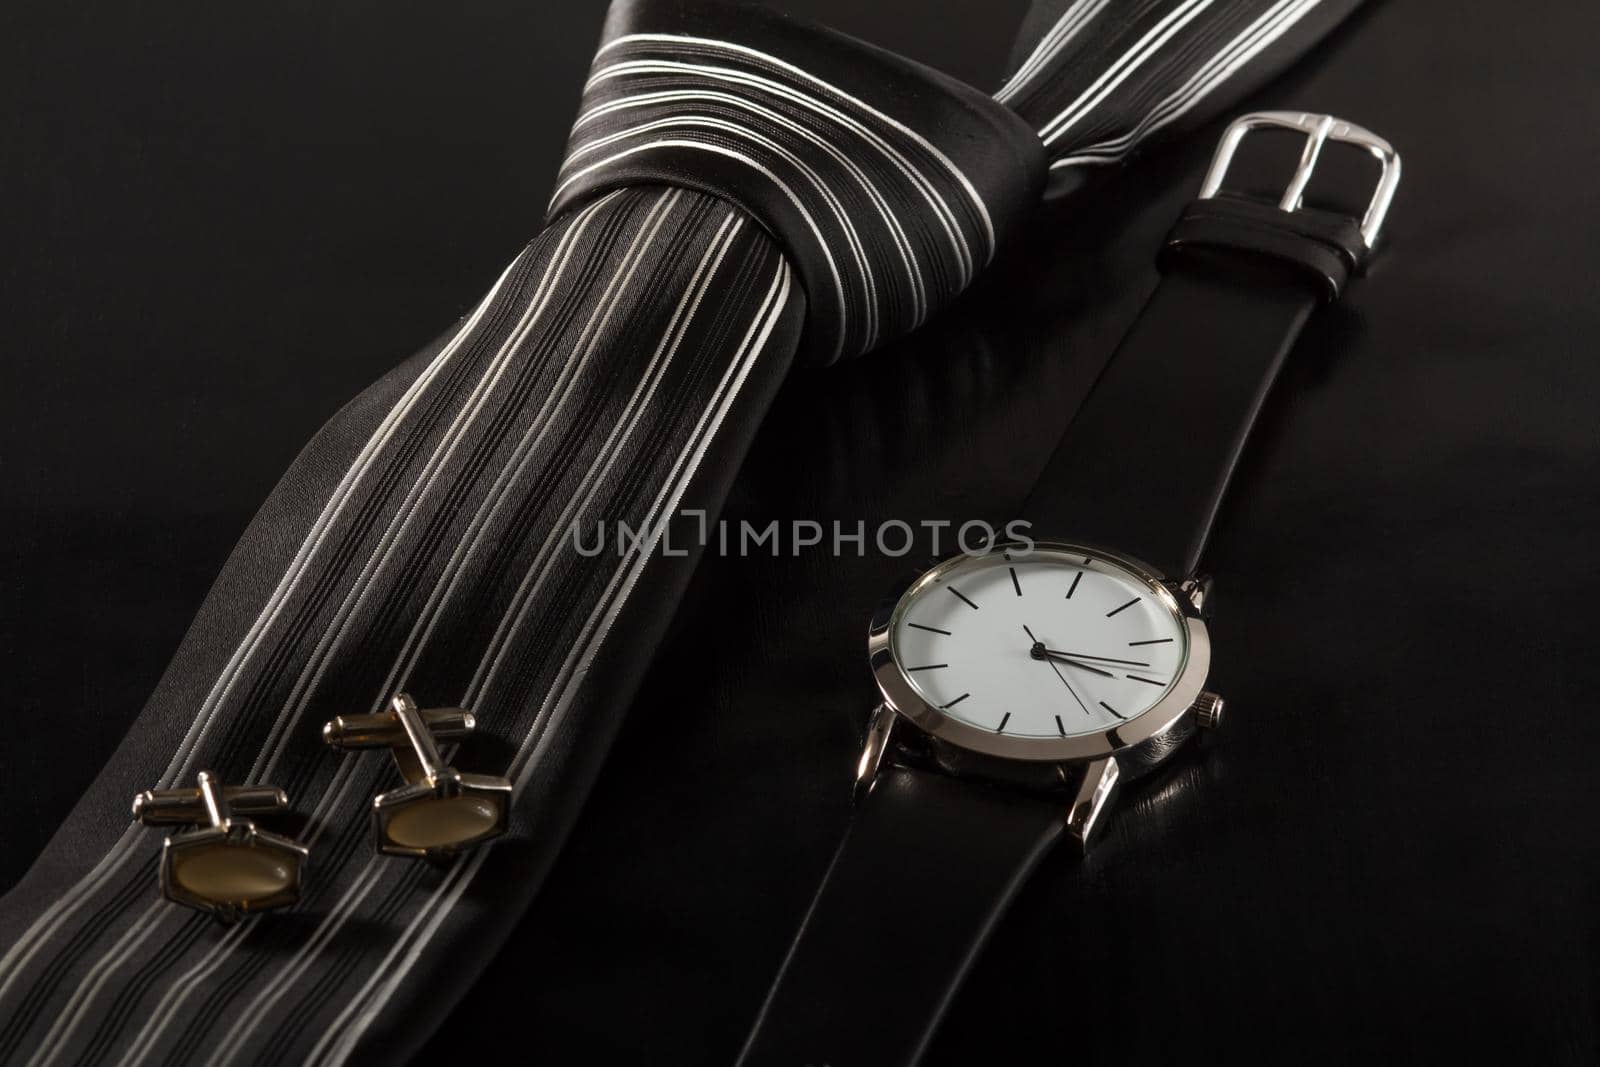 Accessories for men. Silk tie, cufflinks, watch on a black background by mvg6894